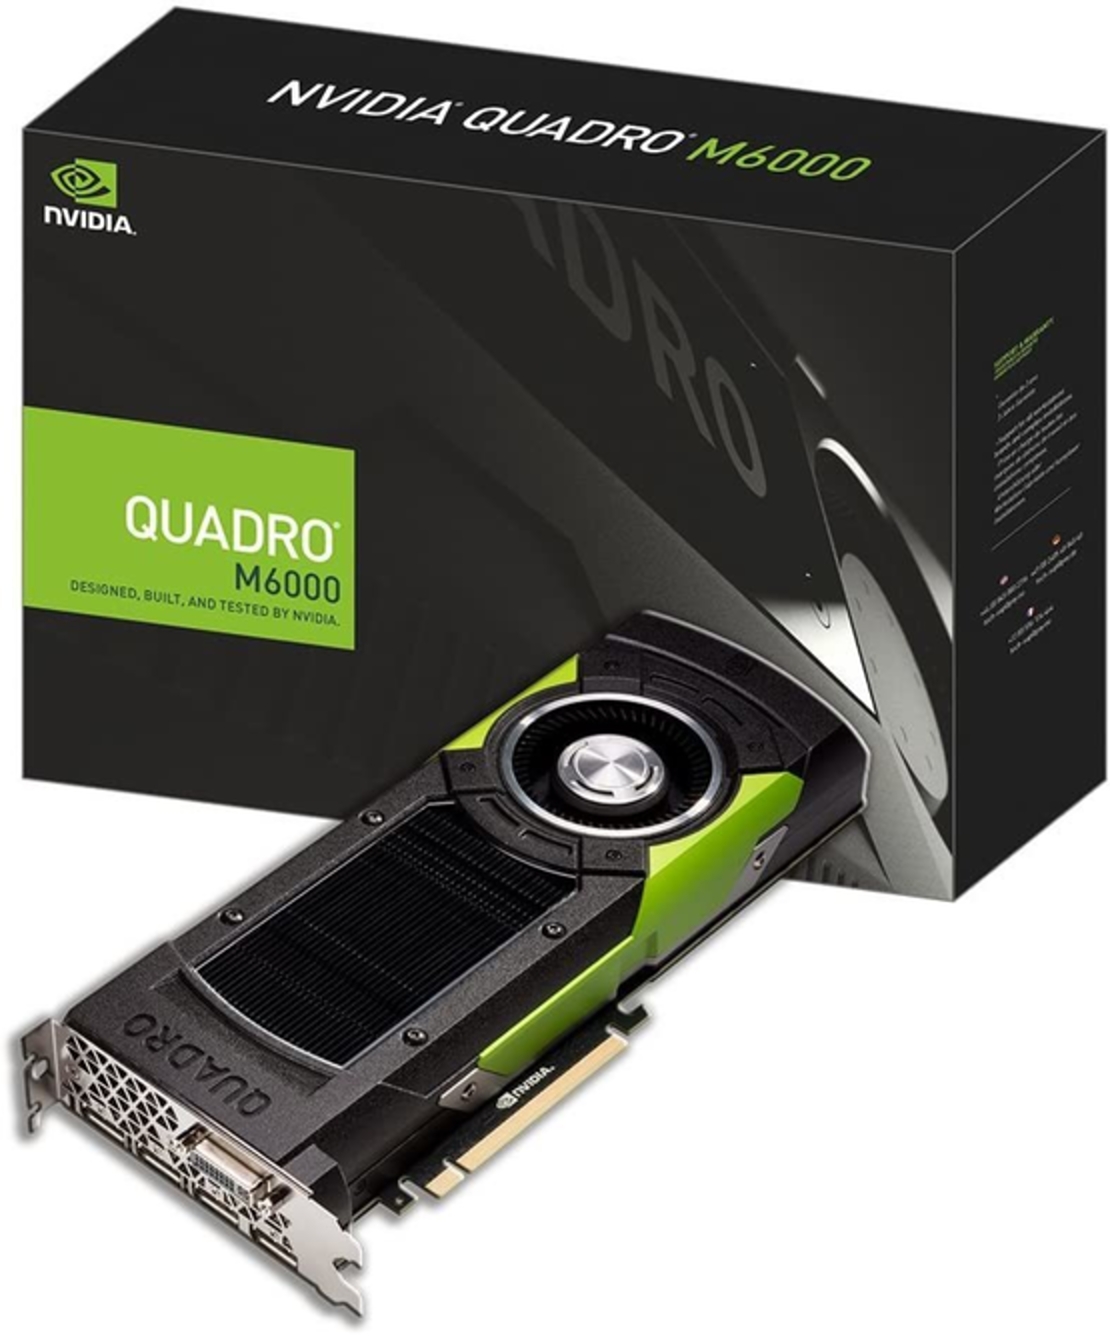 Nvidia Quadro M6000 12G DDR5 PCIE